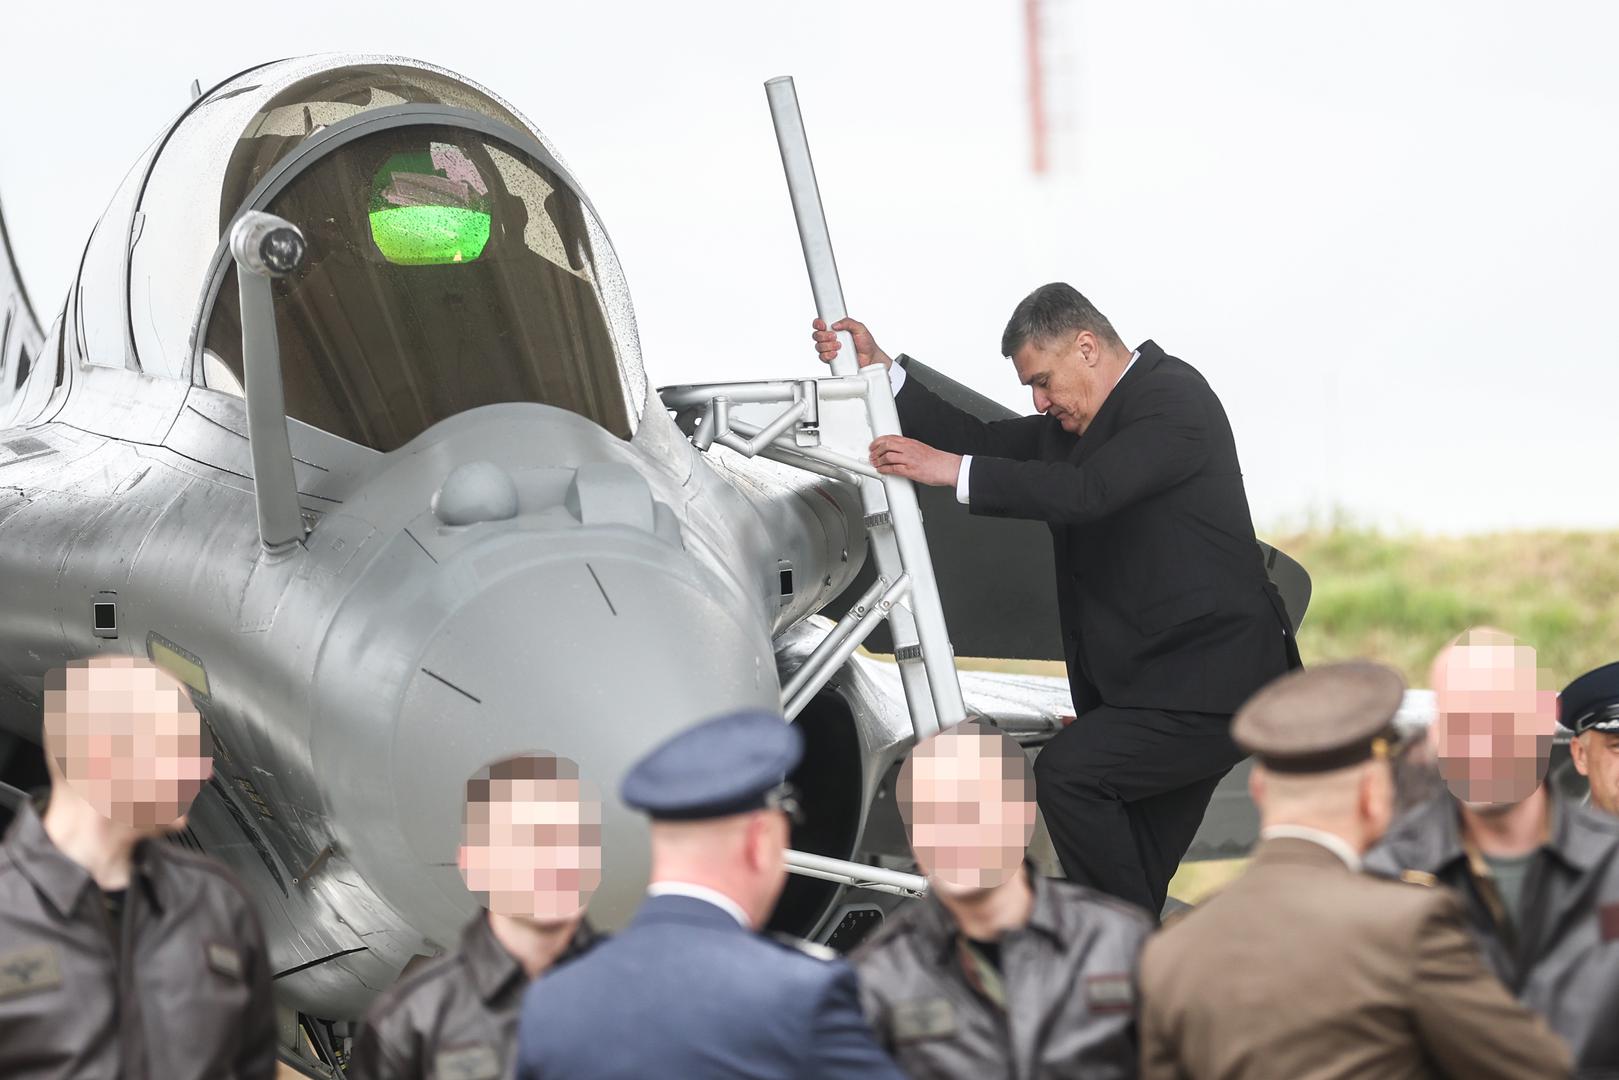 Predsjednik Milanović iskoristio je priliku pa se popeo ljestvama kako bi vidio unutrašnjost jednog od aviona